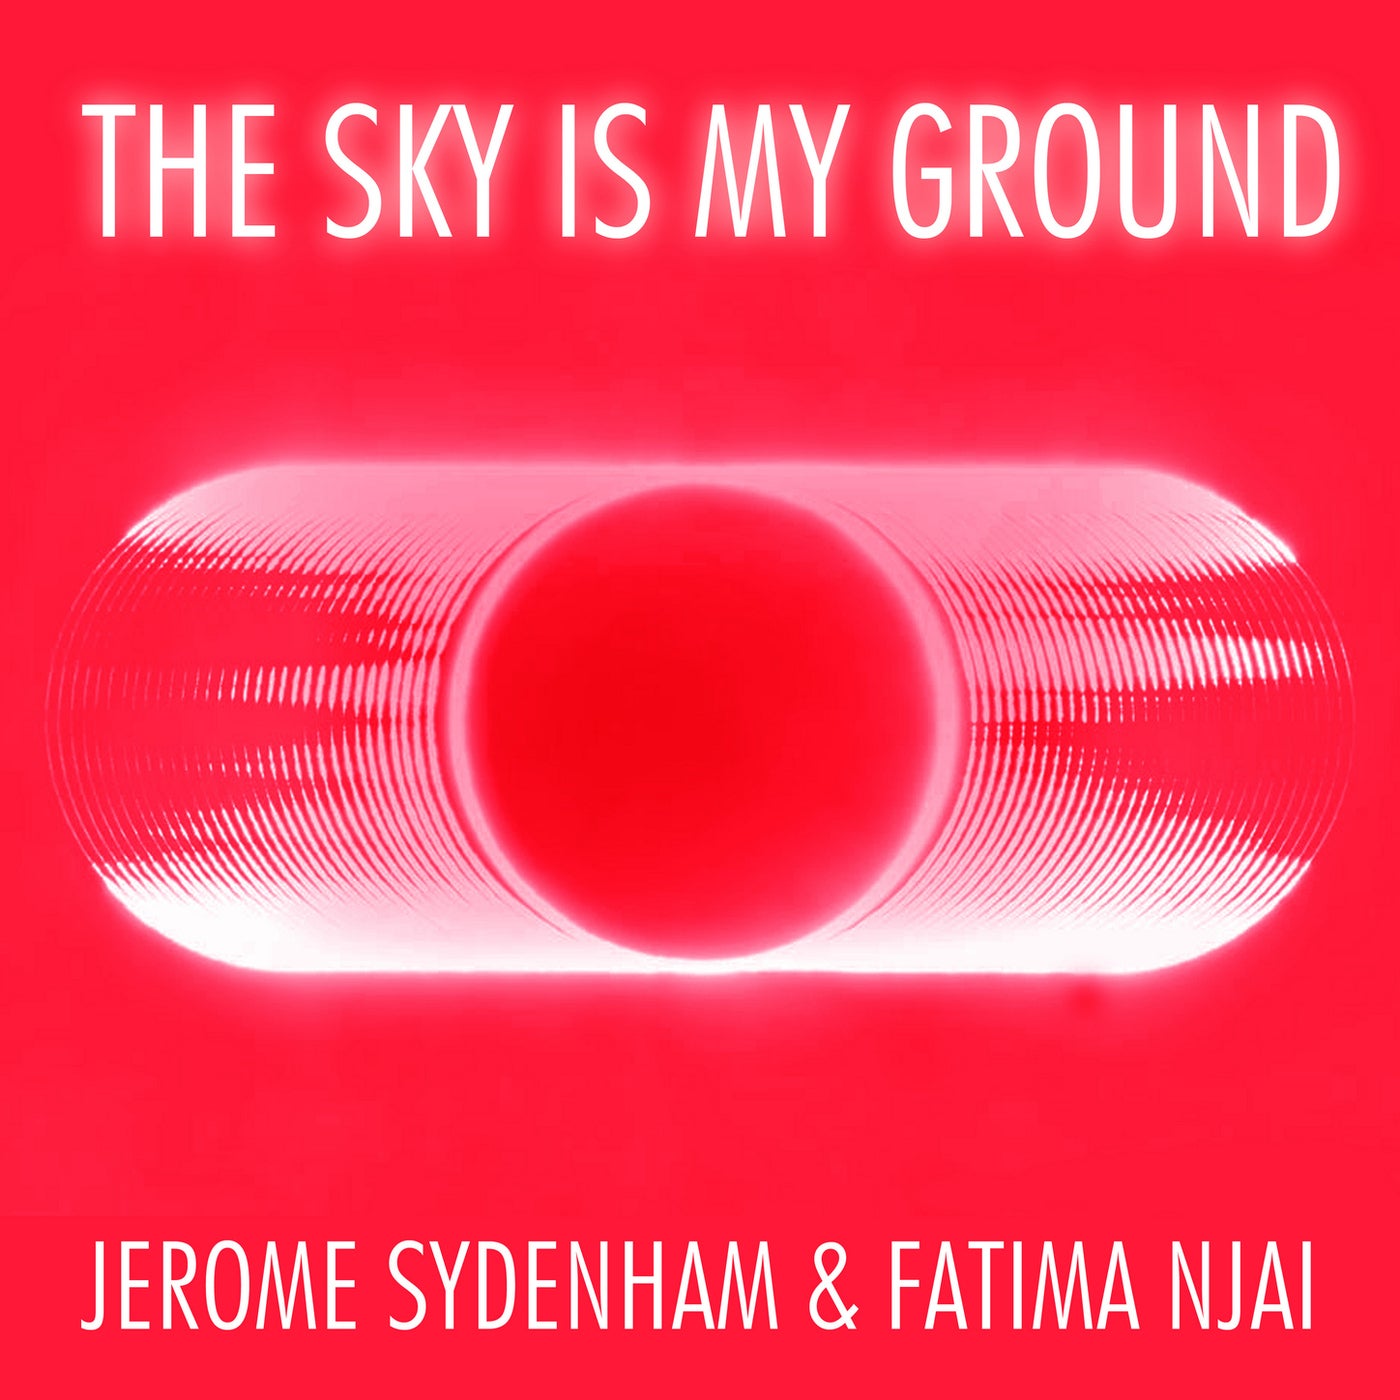 Jerome Sydenham, Fatima Njai - The Sky Is My Ground [ROBA003]